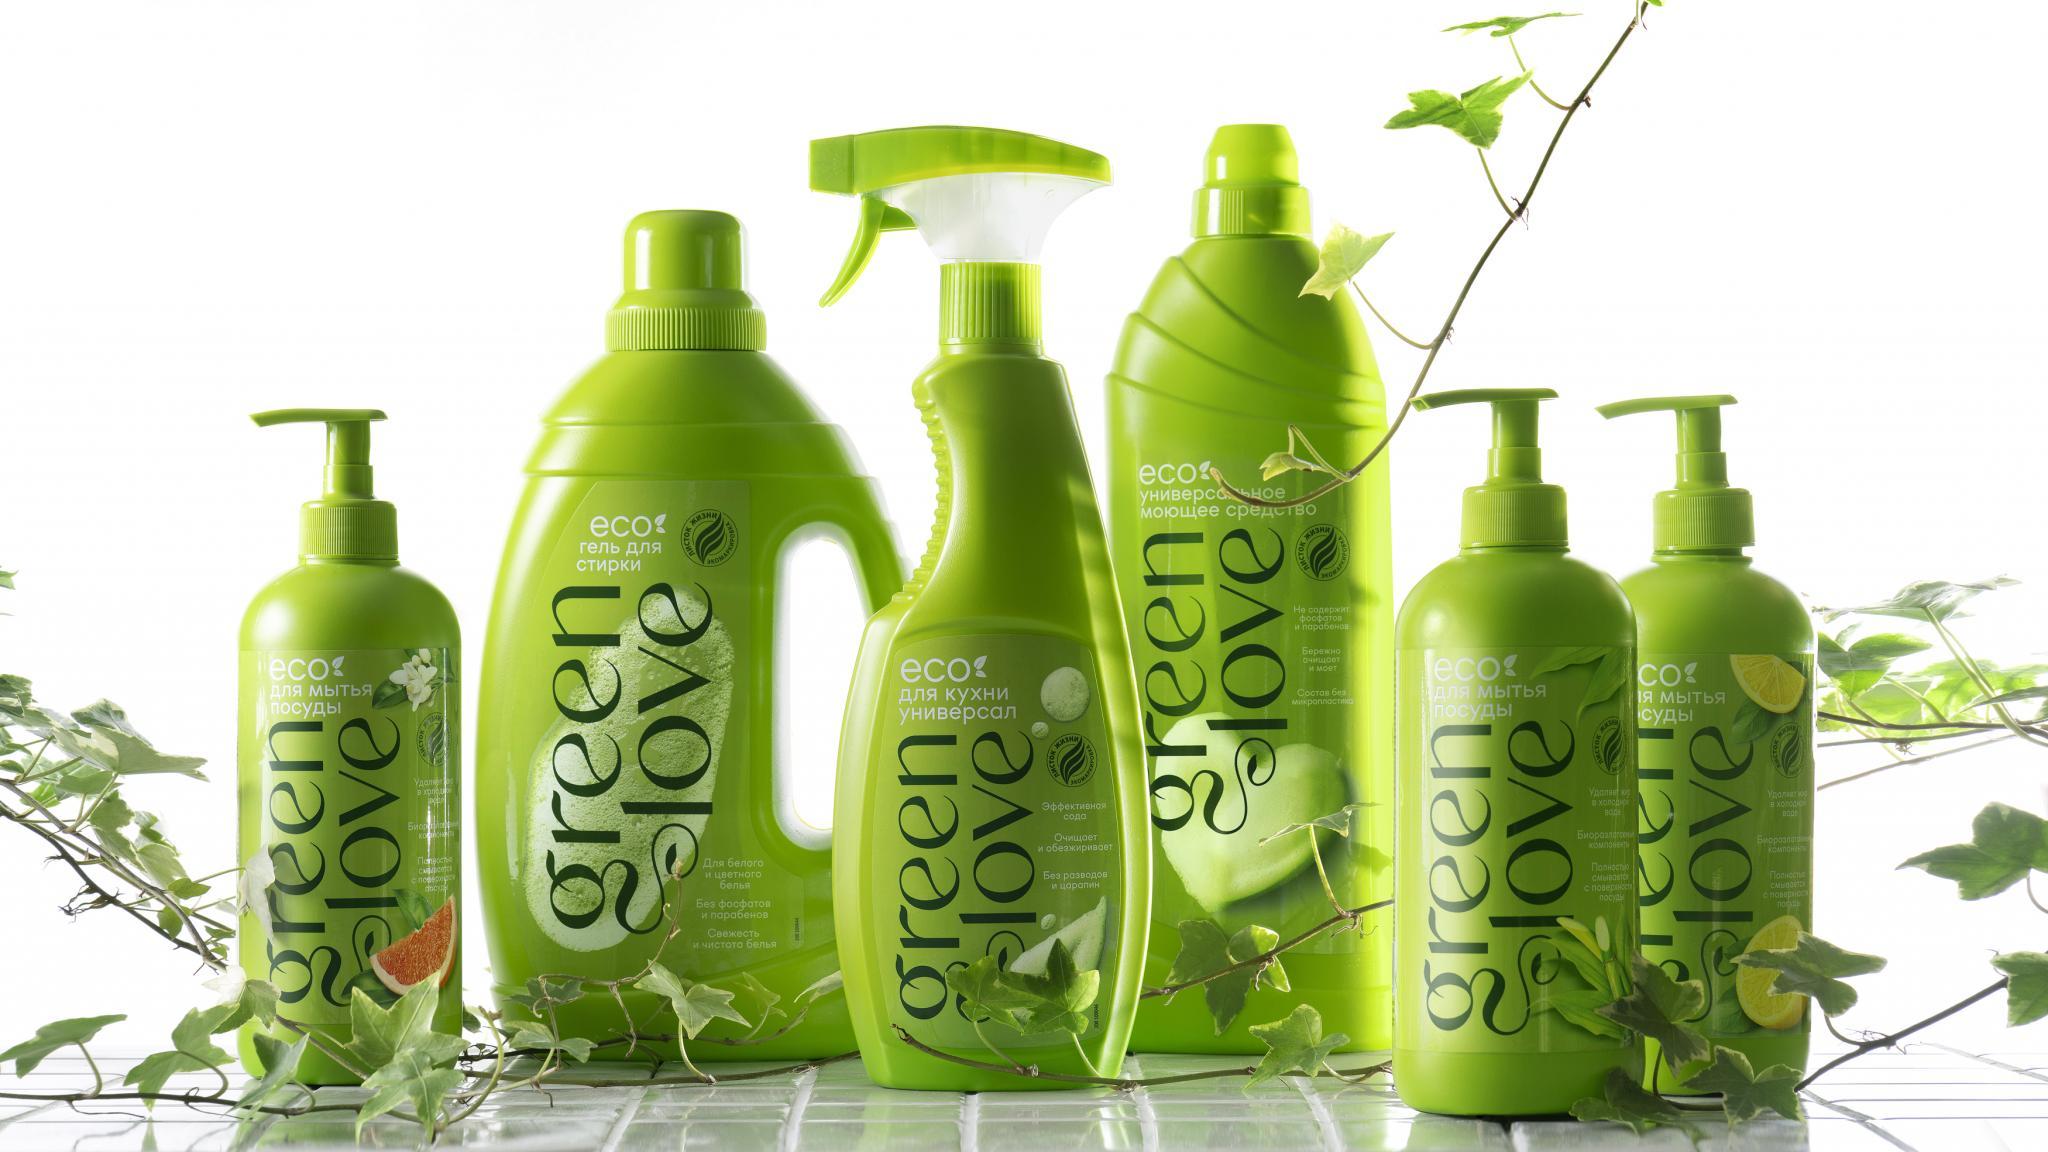 Depot Branding Agency Creates Packaging Design for Green Love